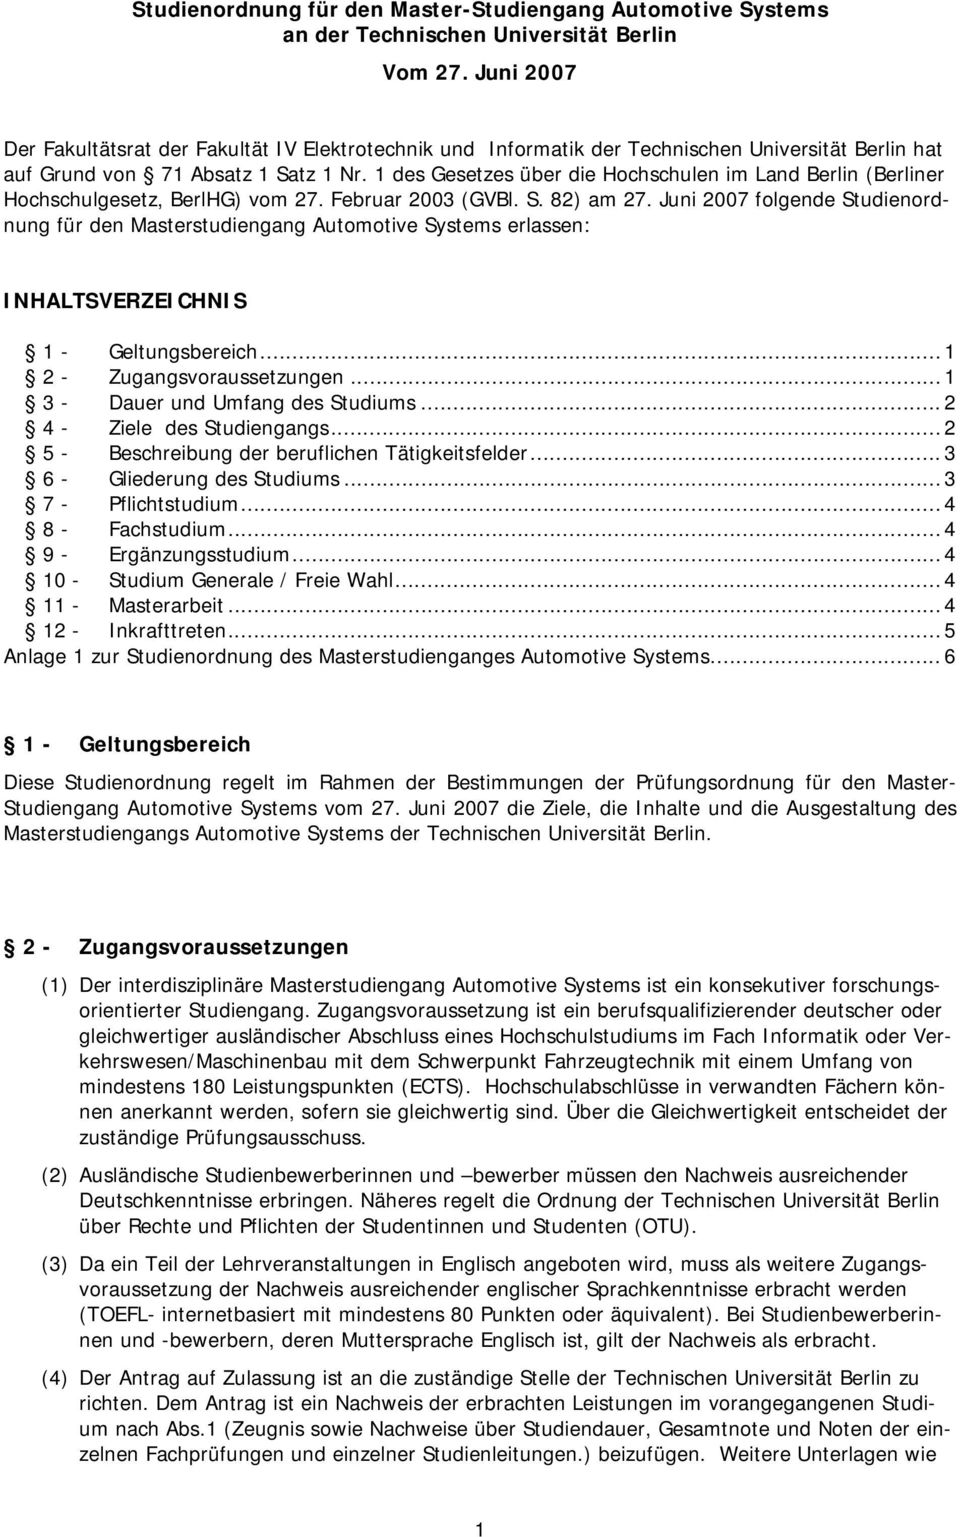 1 des Gesetzes über die Hochschulen im Land Berlin (Berliner Hochschulgesetz, BerlHG) vom 27. Februar 2003 (GVBl. S. 82) am 27.